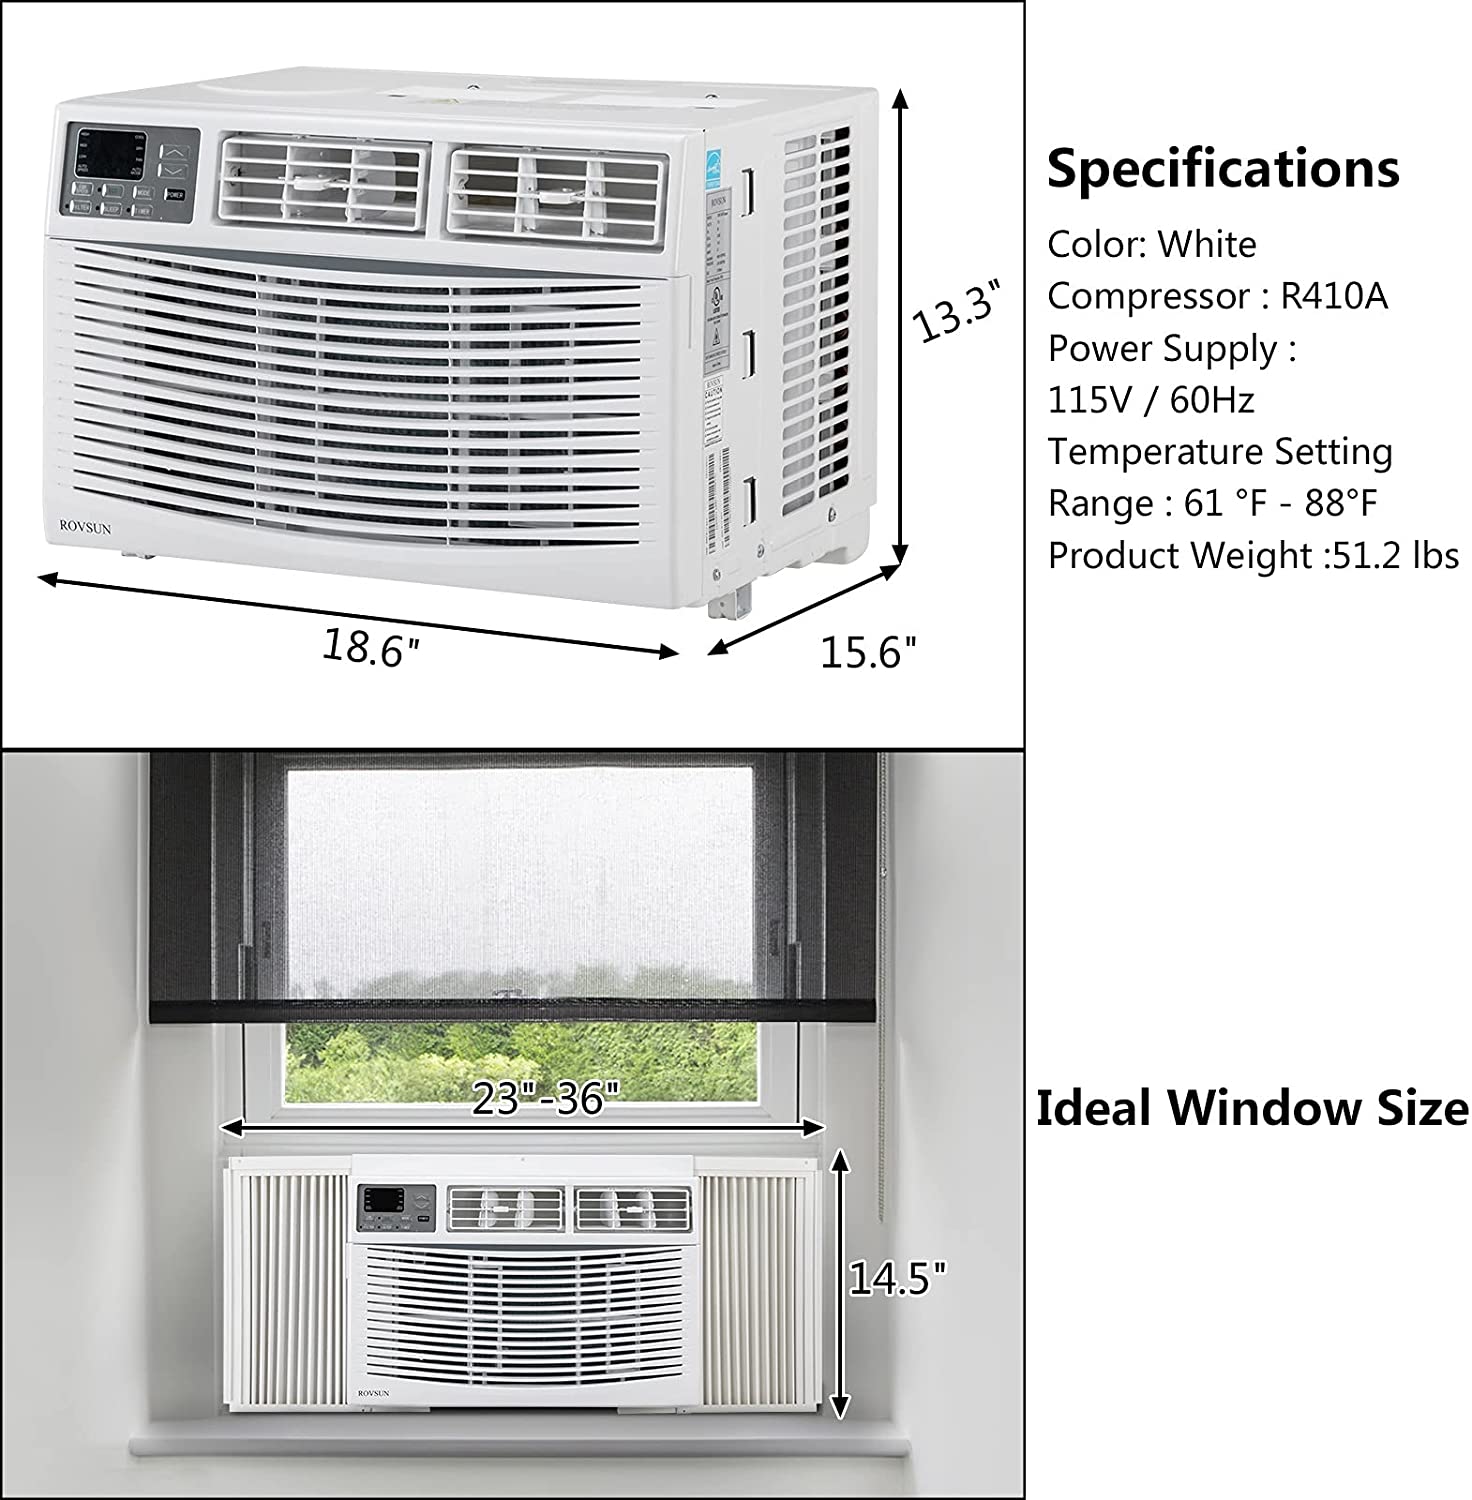 ROVSUN 8000 BTU Window Air Conditioner Specs